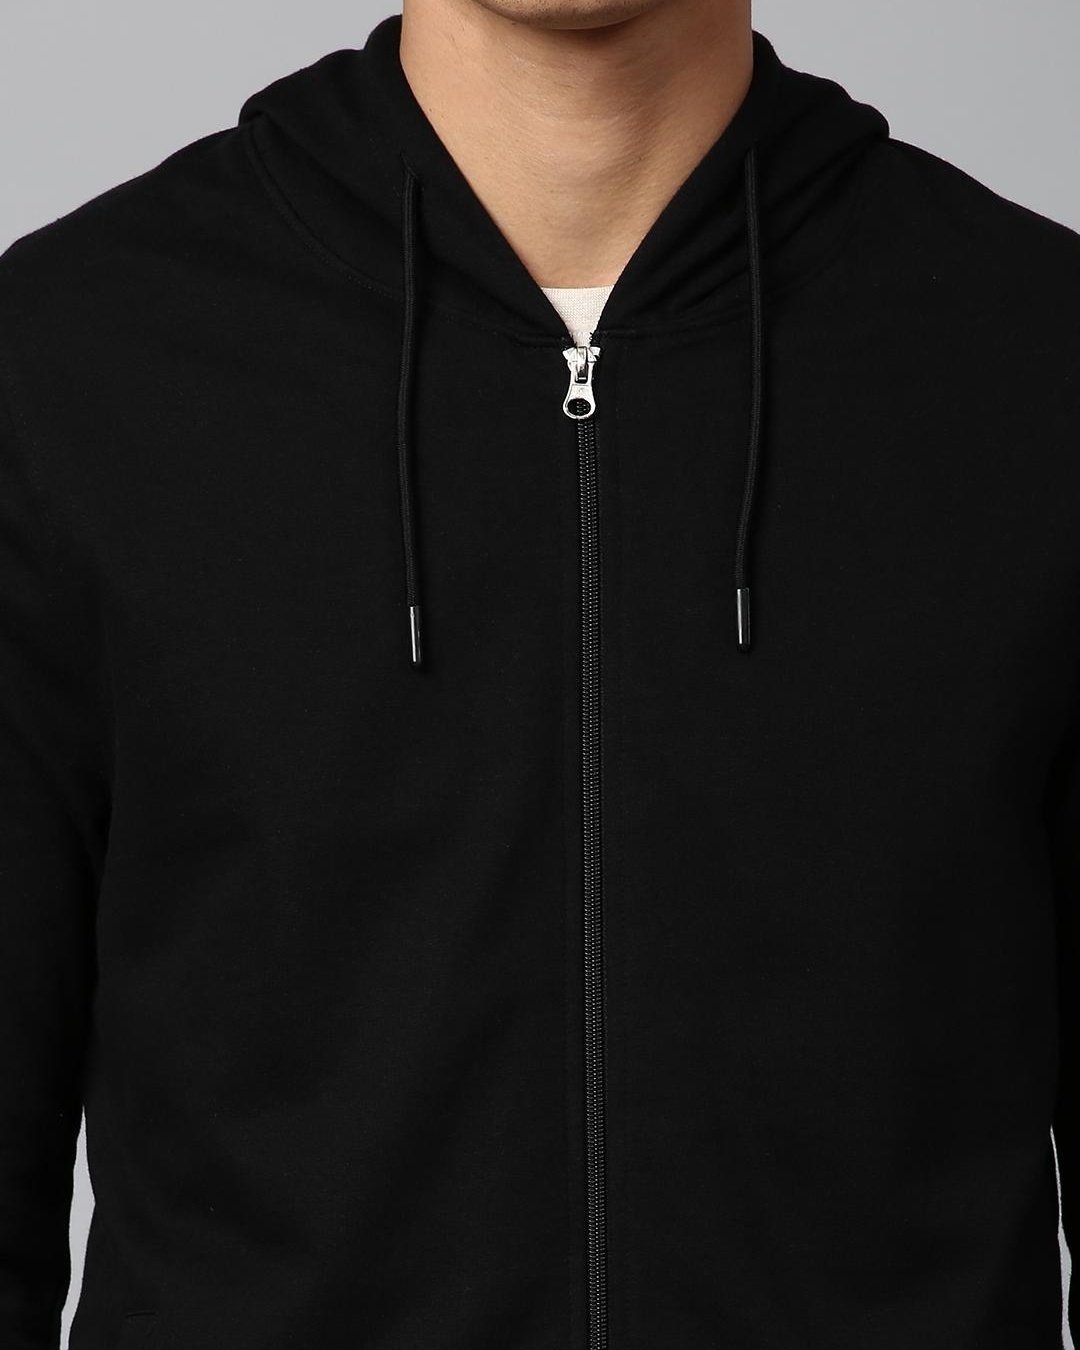 Buy Men's Black Hooded Sweatshirt for Men Black Online at Bewakoof